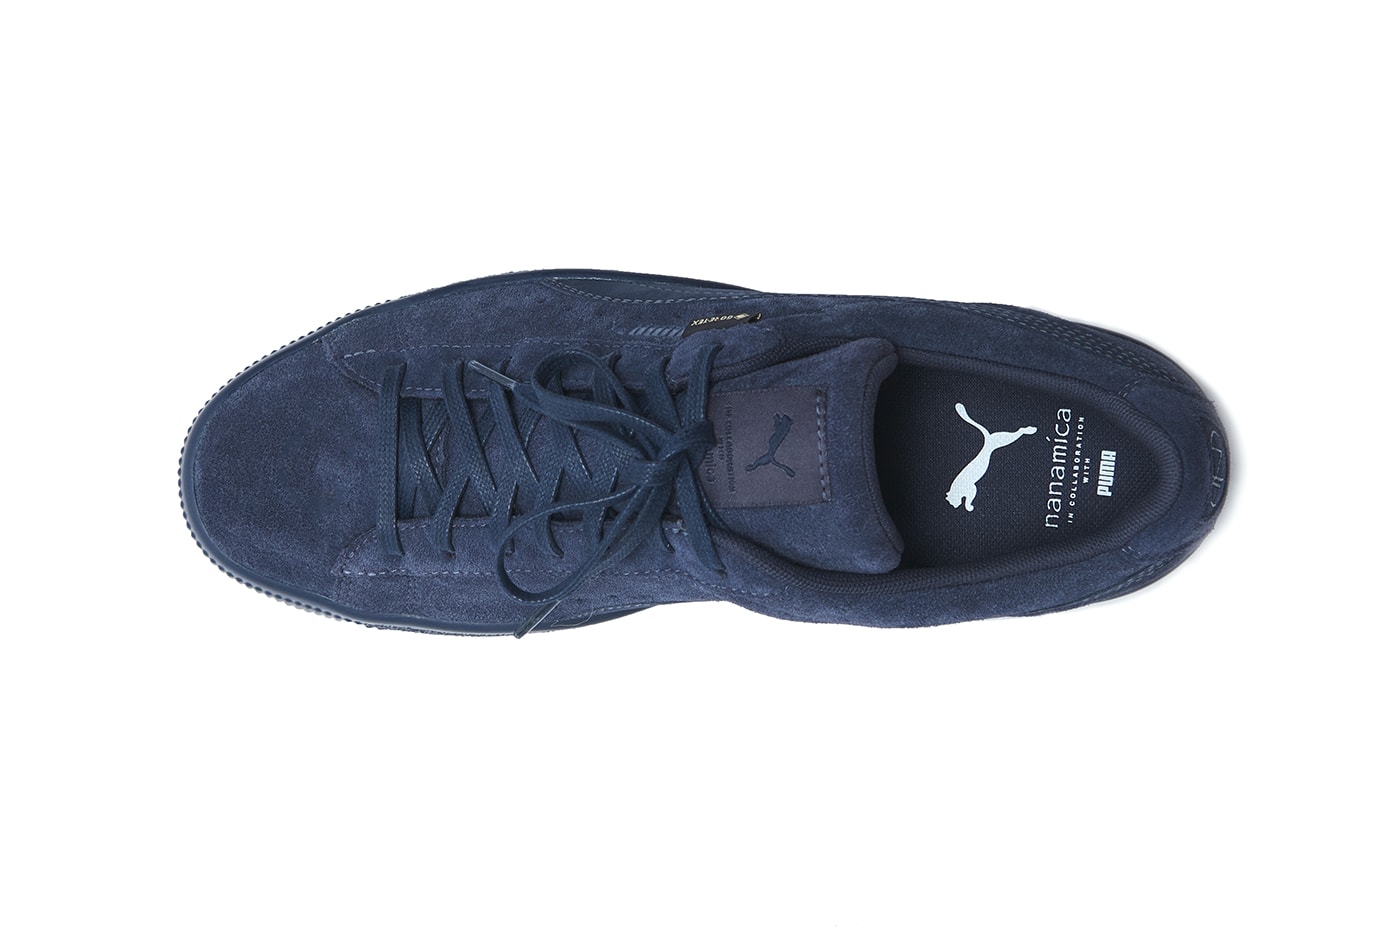 nanamica x PUMA Suede VTG 全新联名鞋款正式发布